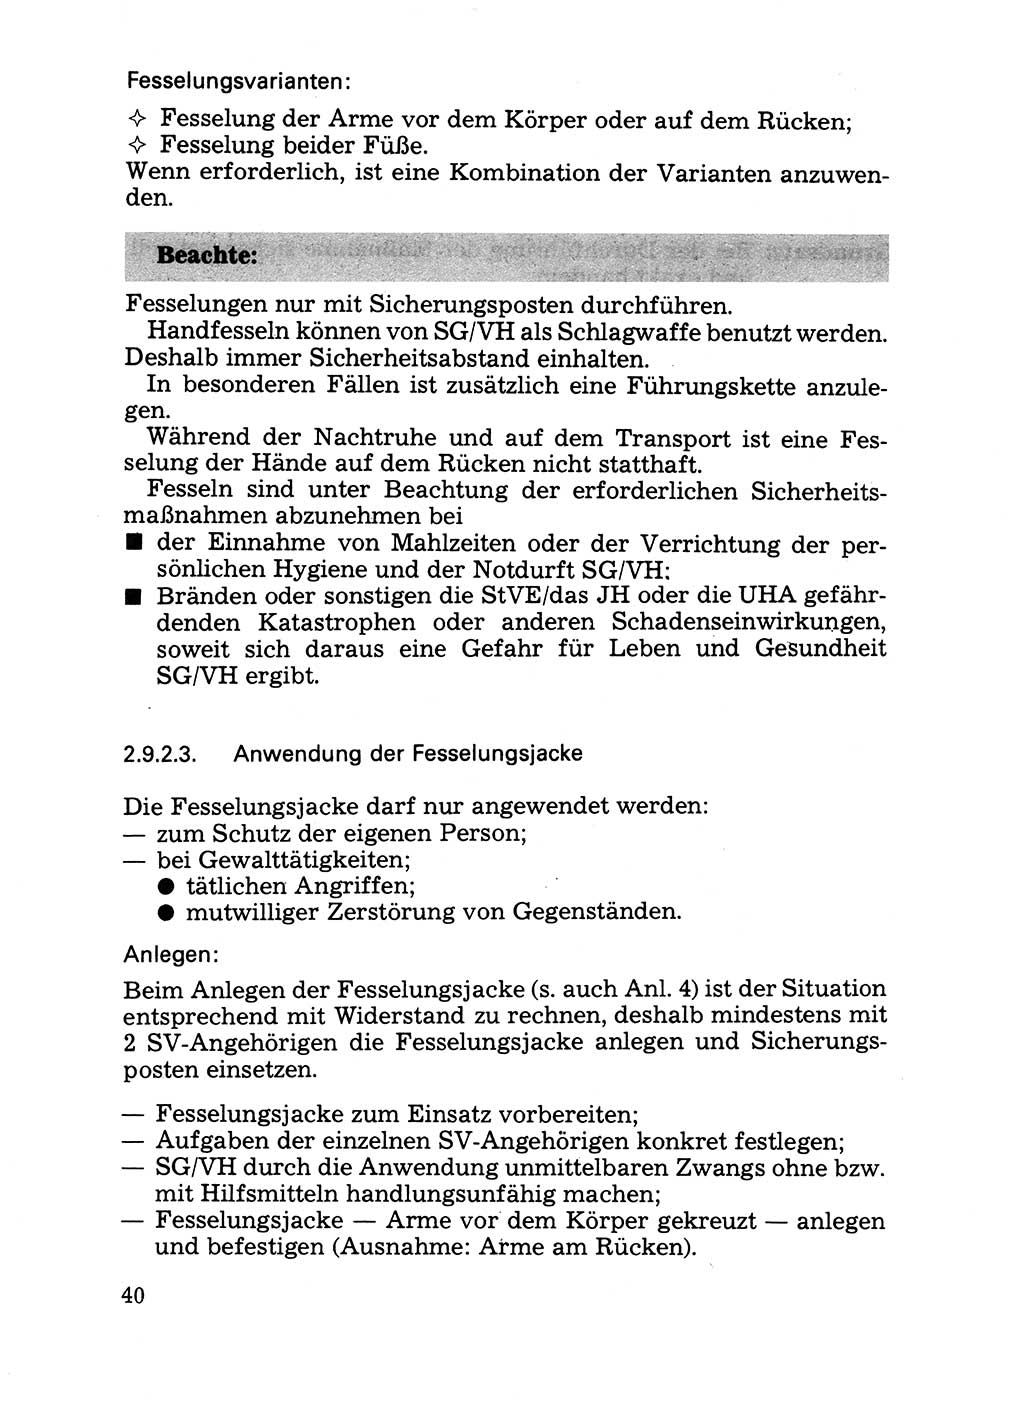 Handbuch für operative Dienste, Abteilung Strafvollzug (SV) [Ministerium des Innern (MdI) Deutsche Demokratische Republik (DDR)] 1981, Seite 40 (Hb. op. D. Abt. SV MdI DDR 1981, S. 40)